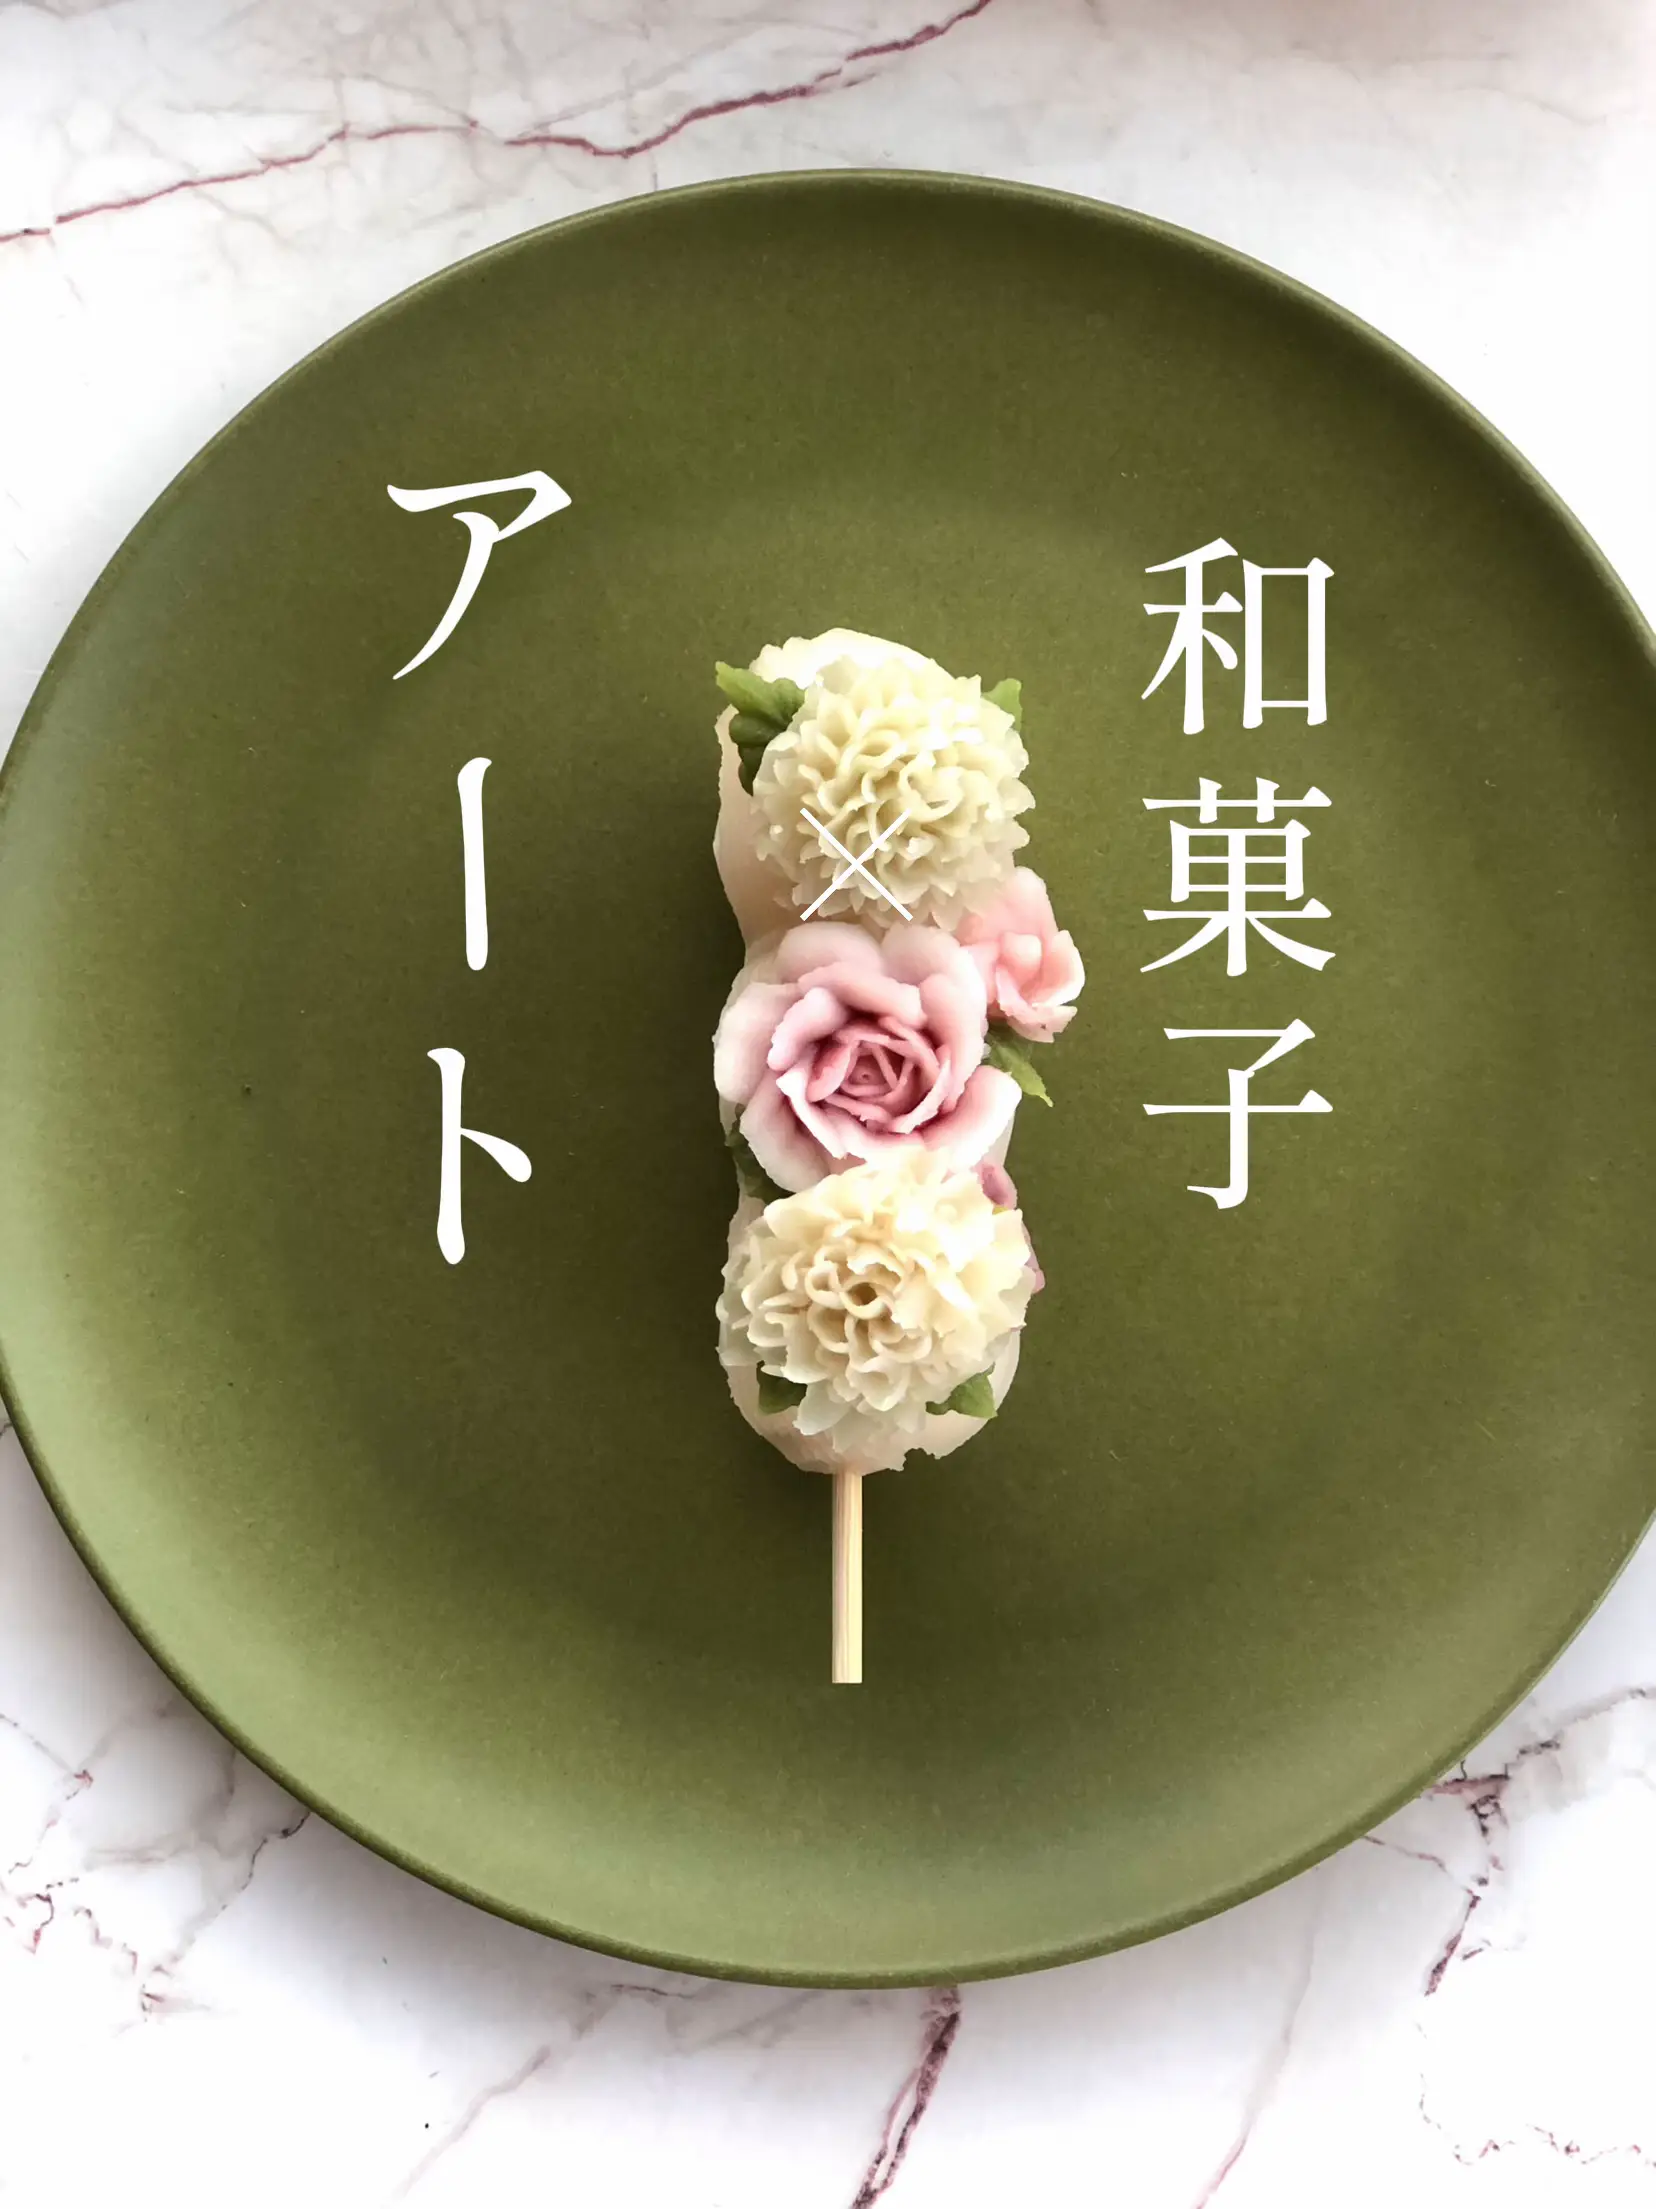 和菓子で作られた牡丹の花です、食べれますが、飾り物が良いと思います 